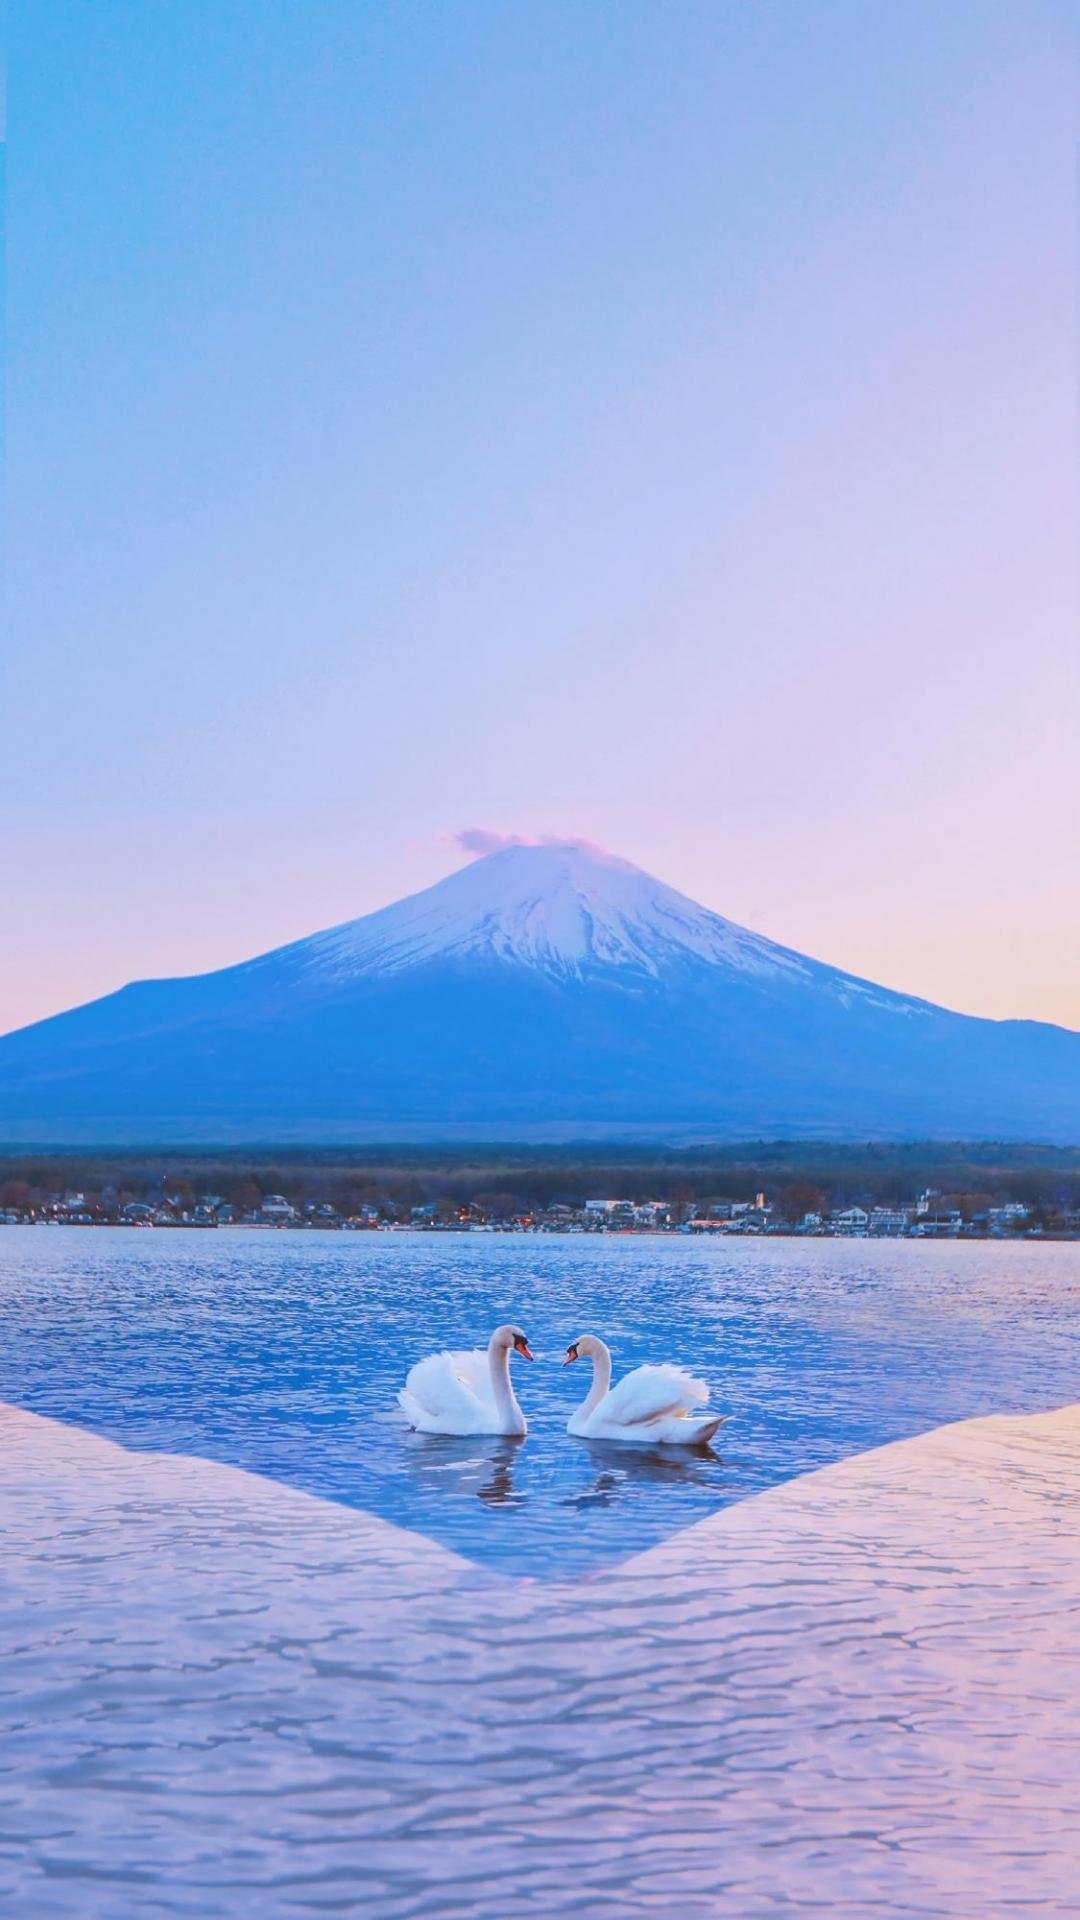 富士山下的清澈优美湖泊美景,高清图片,手机壁纸